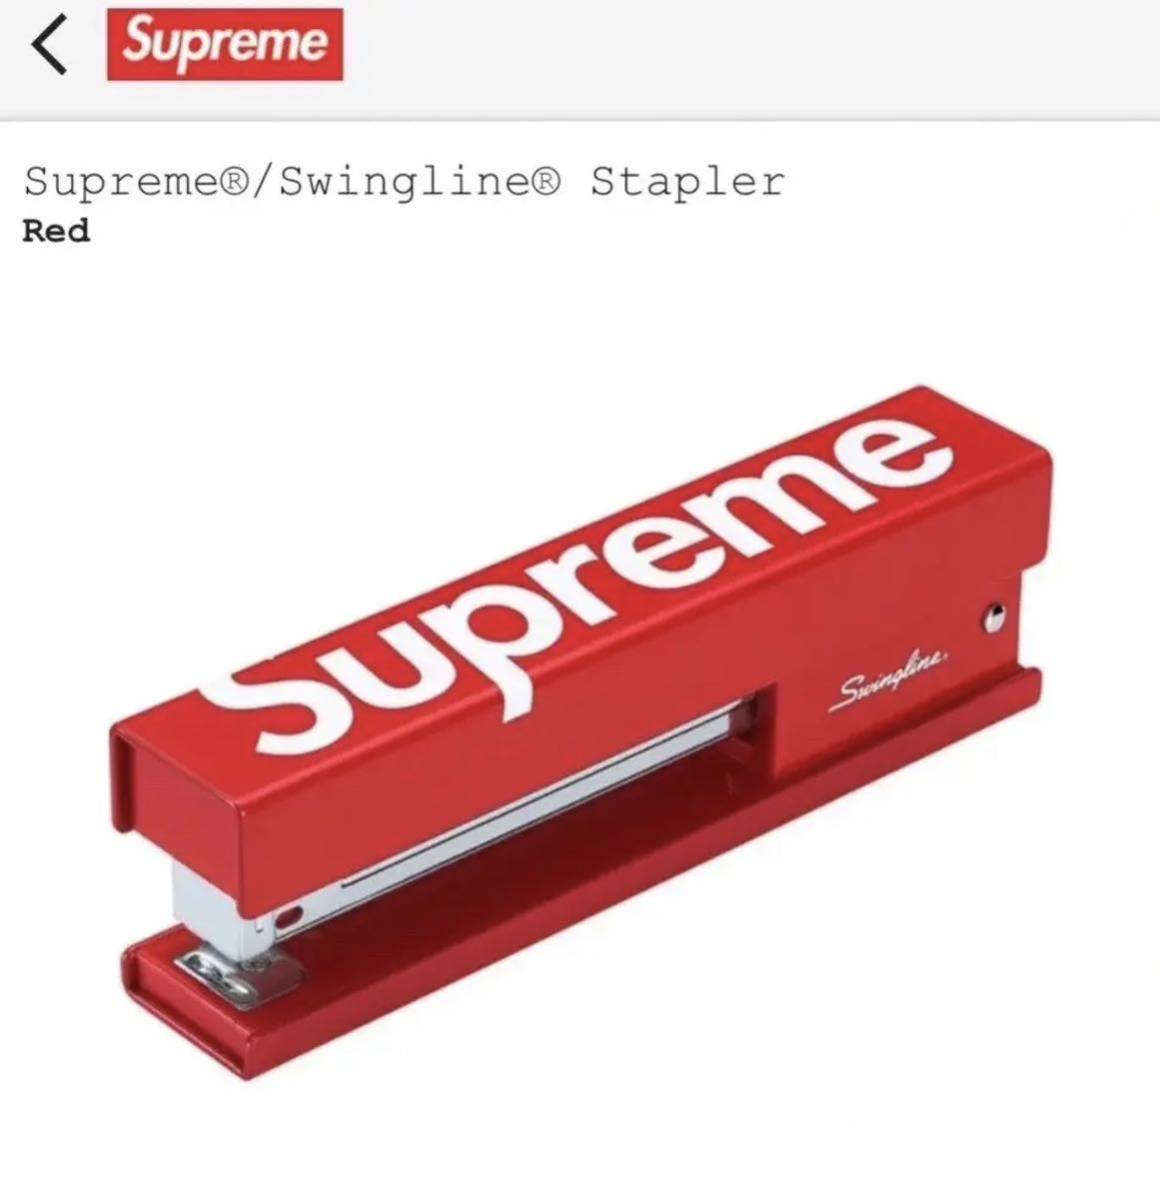 レア 新品 送料無料 Supreme Swingline Stapler シュプリーム スイングライン ステープラー ホチキス box logo ボックスロゴ ステッカー付_画像3